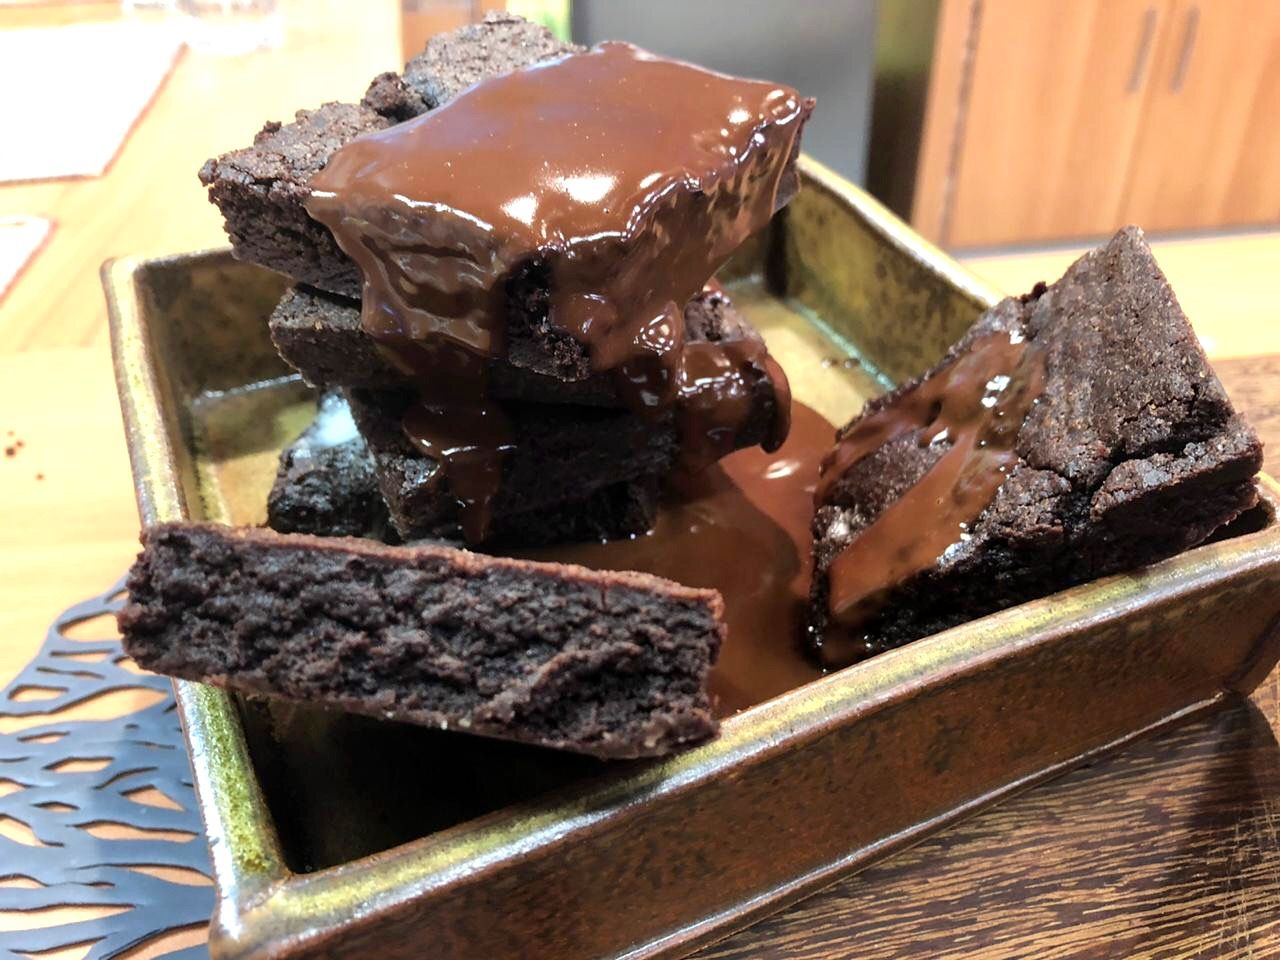 Brownie de chocolate | Band Receitas